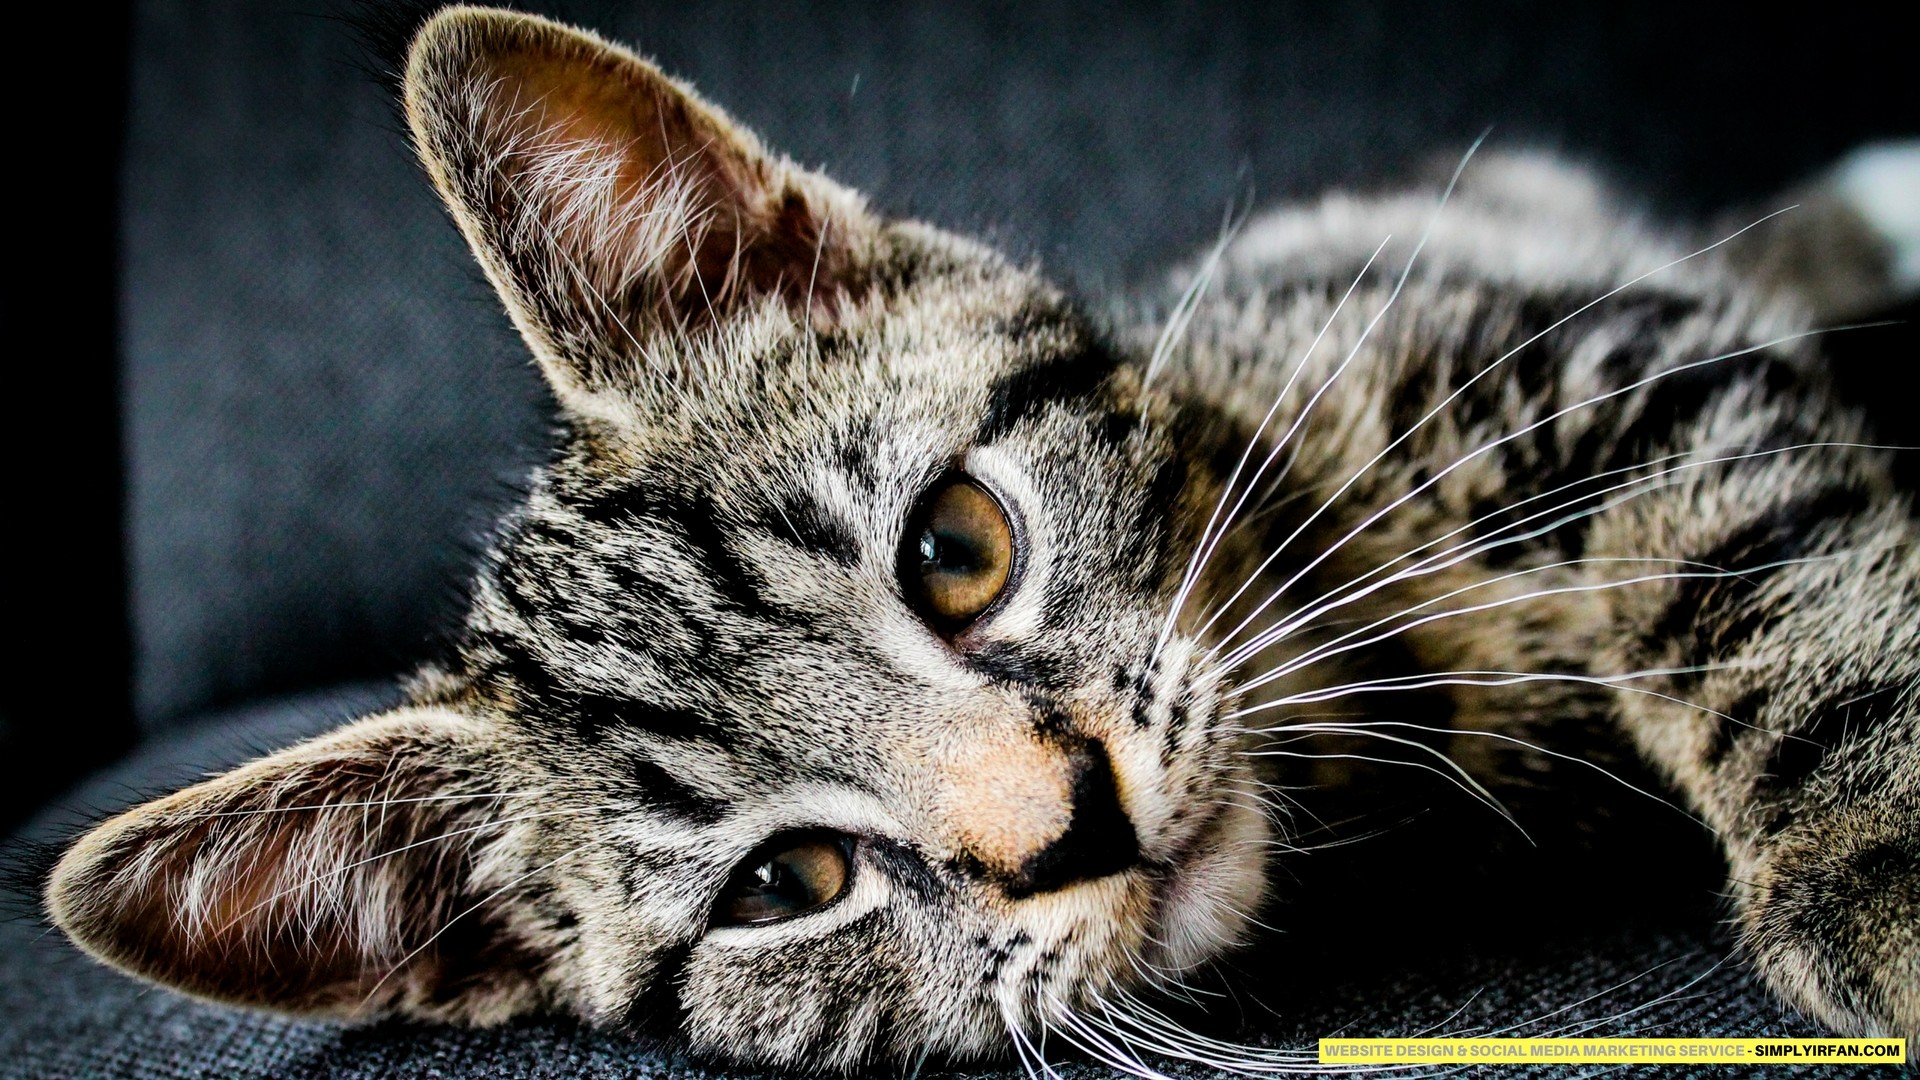 immagini di gatti hd wallpaper,gatto,gatti di piccola e media taglia,barba,felidae,gatto soriano